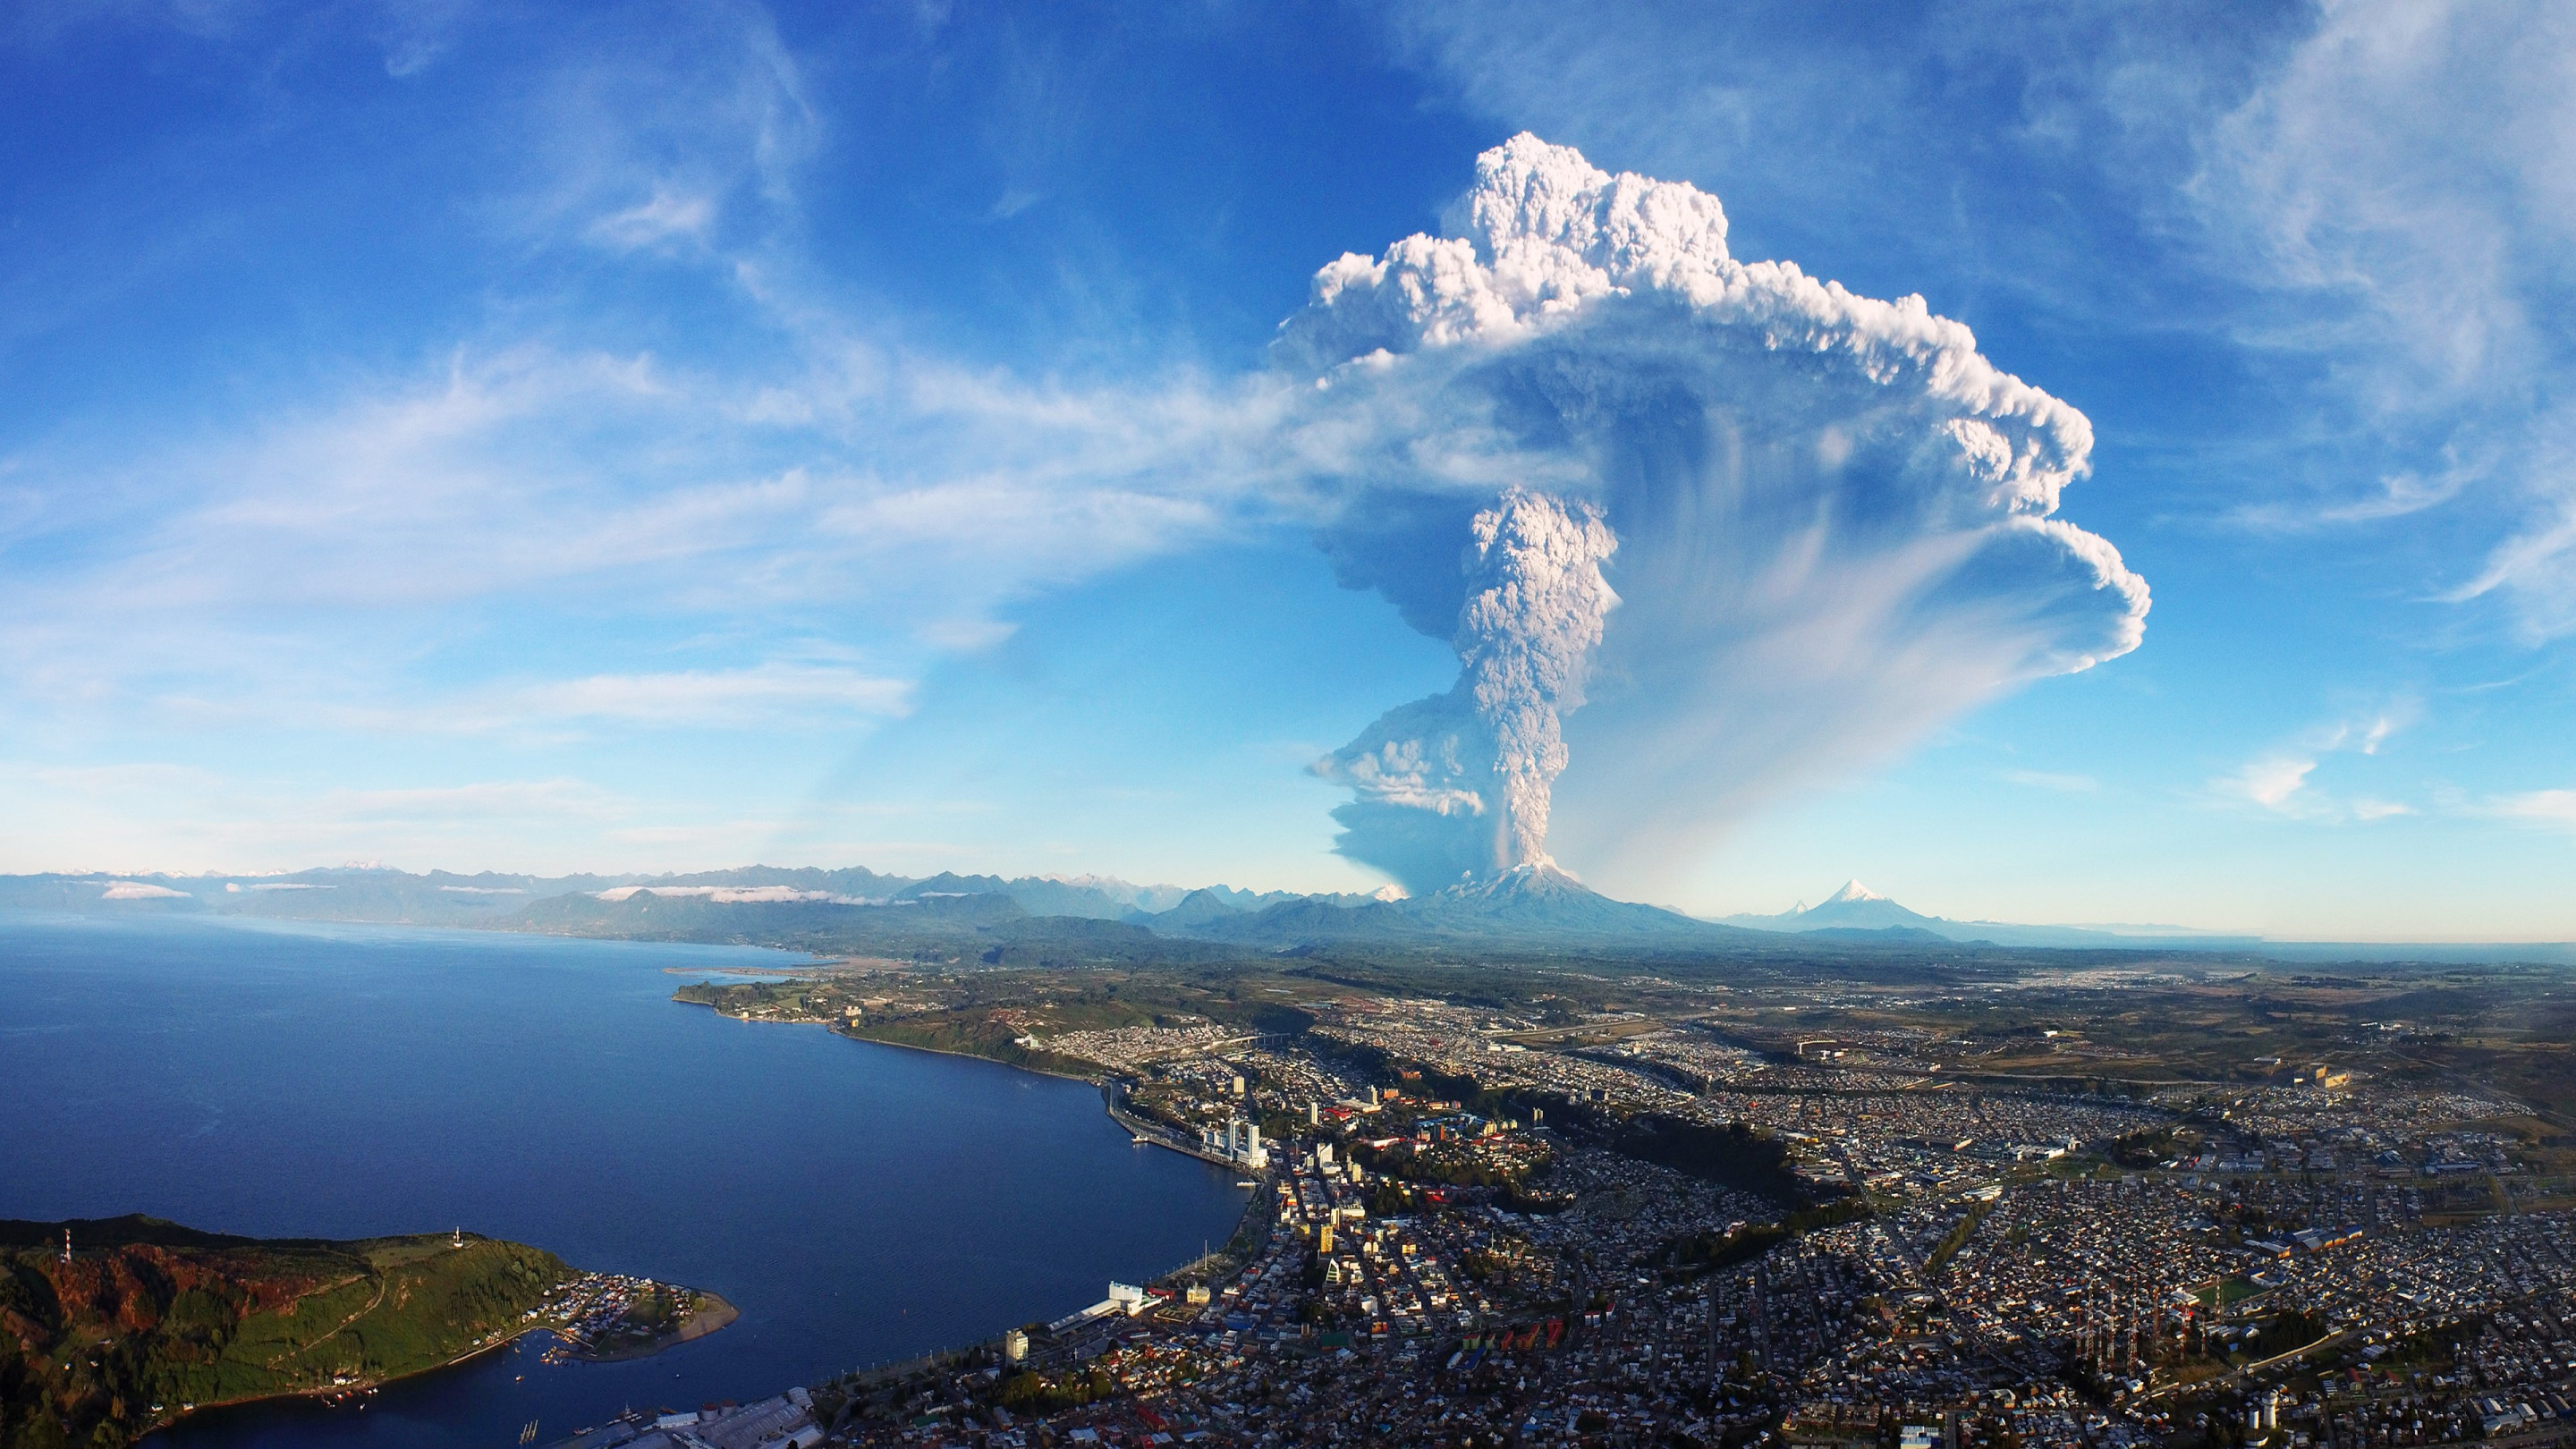 Calbuco volcano in Chile erupts wallpaper 2880x1620